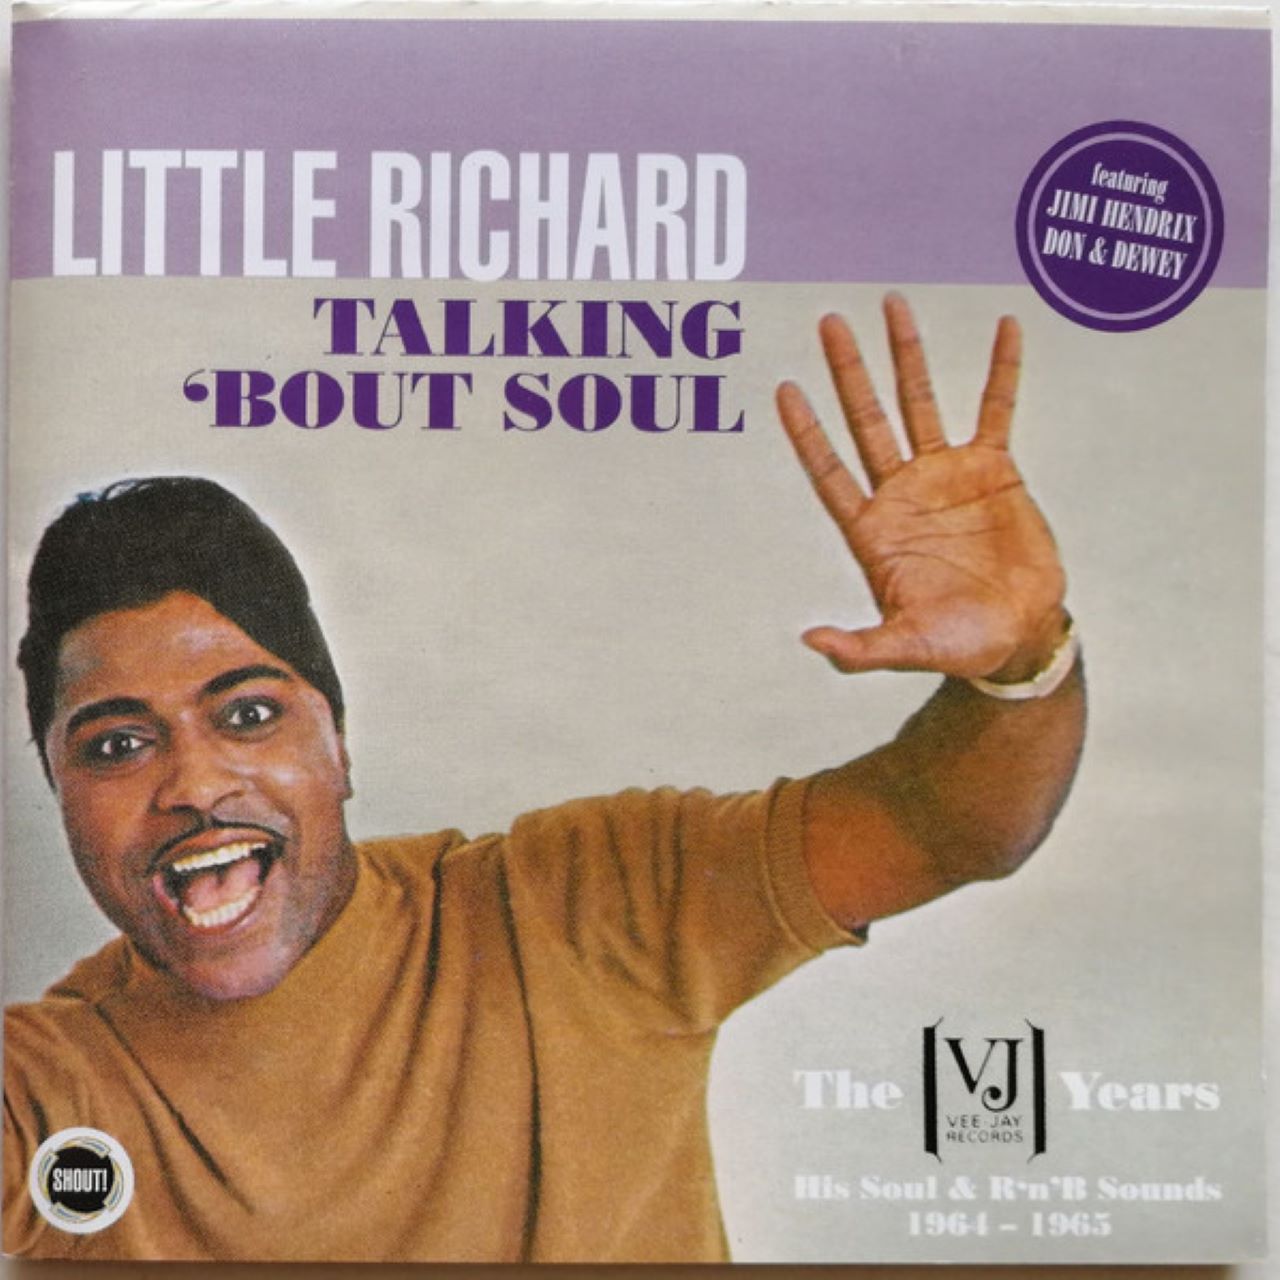 Little Richard - Talkin' 'bout Soul cover album